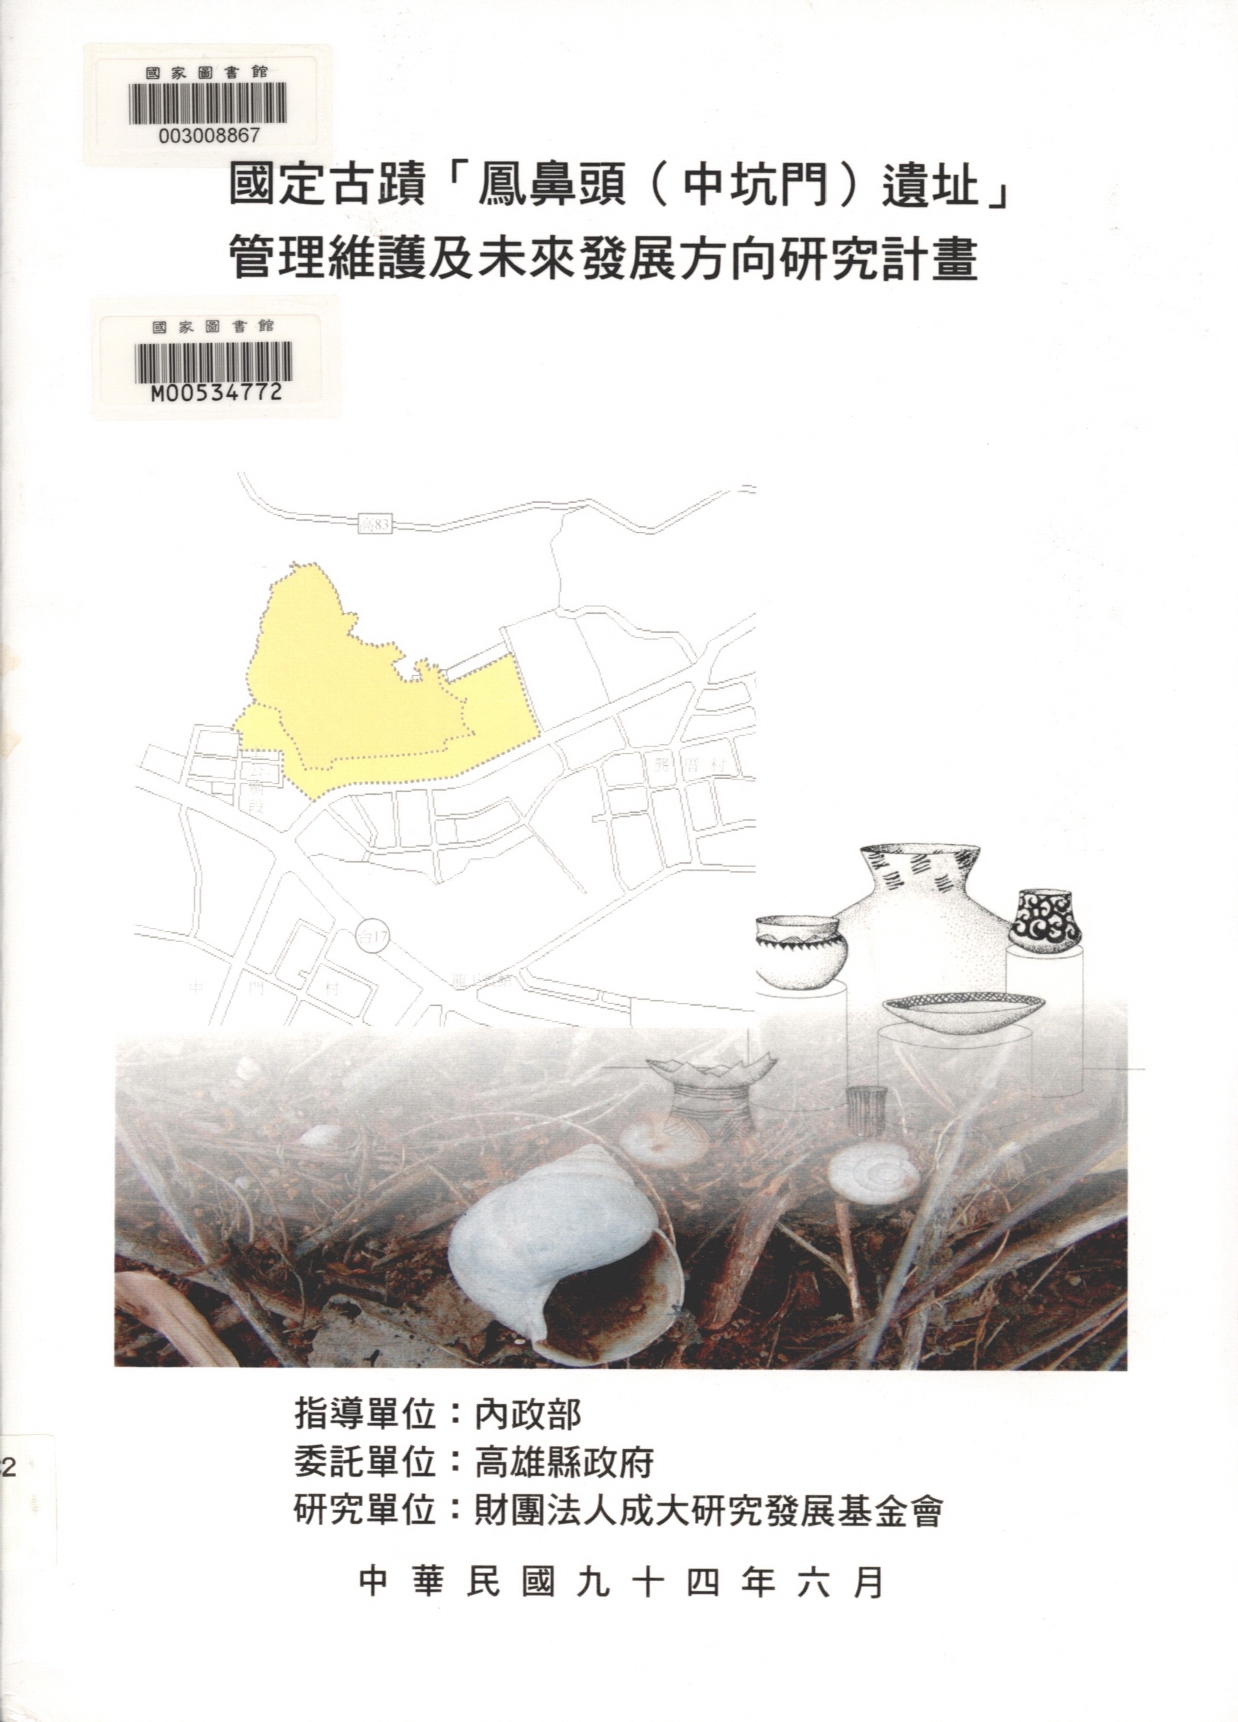 表4-3　高雄縣區域排水系統表出自：國定古蹟「鳳鼻頭（中坑門）遺址」管理維護及未來發展方向研究計畫